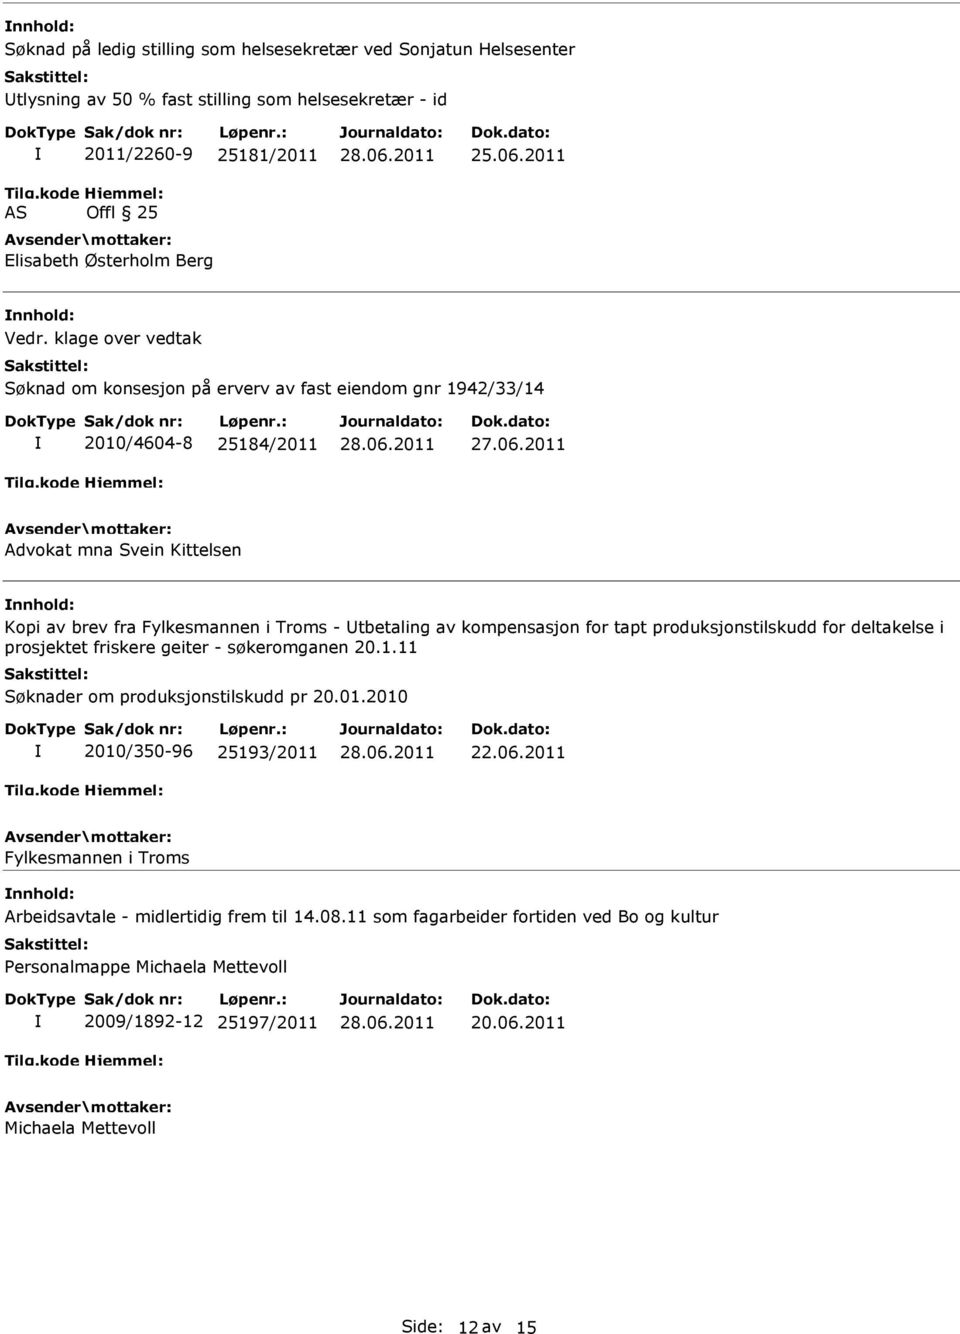 kompensasjon for tapt produksjonstilskudd for deltakelse i prosjektet friskere geiter - søkeromganen 20.1.11 Søknader om produksjonstilskudd pr 20.01.2010 2010/350-96 25193/2011 22.06.